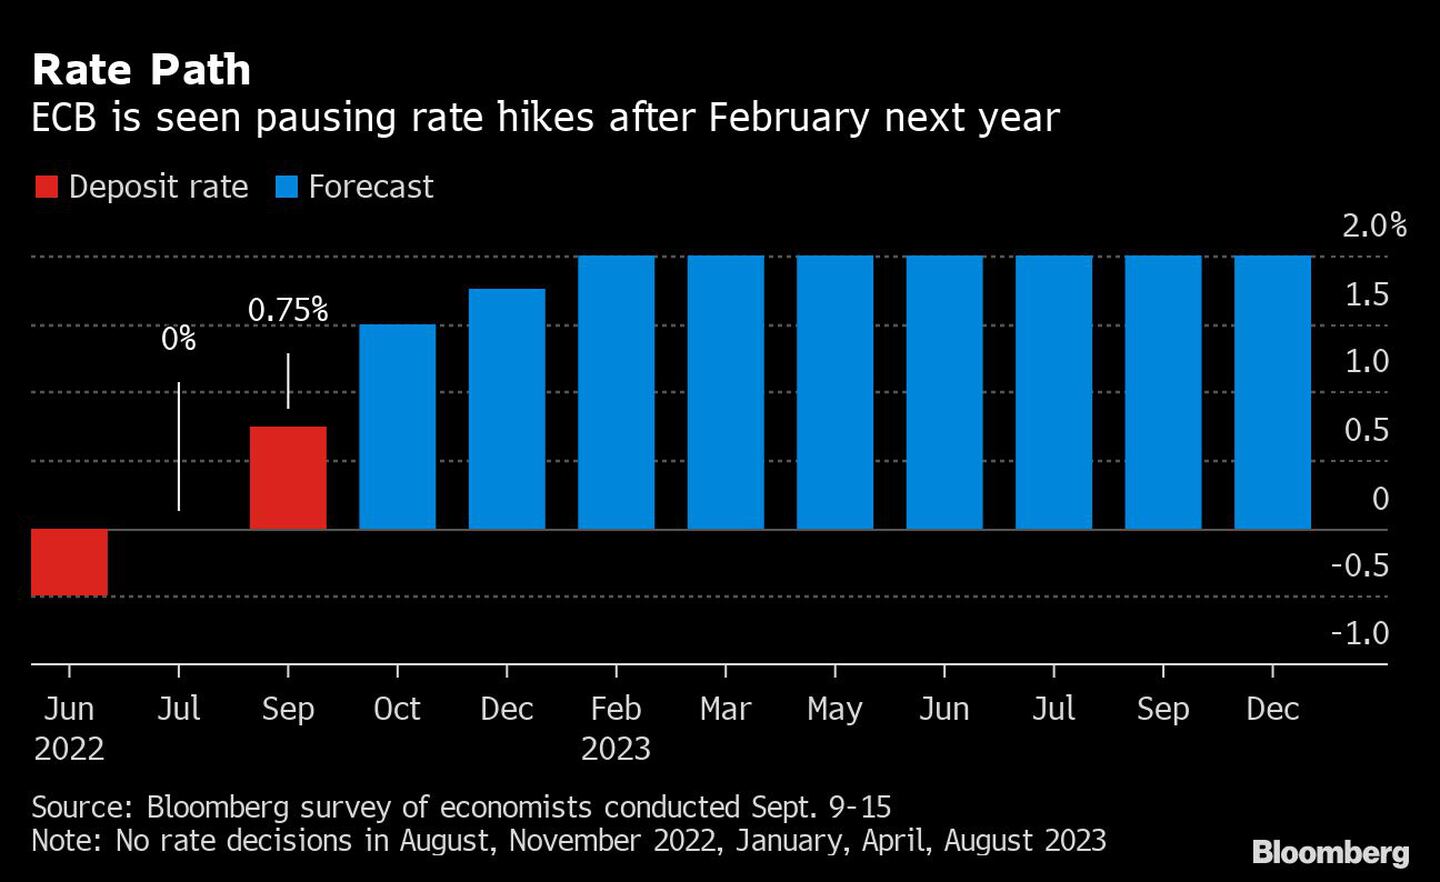 El BCE se ve pausando las subidas de tipos después de febrero del año que vienedfd